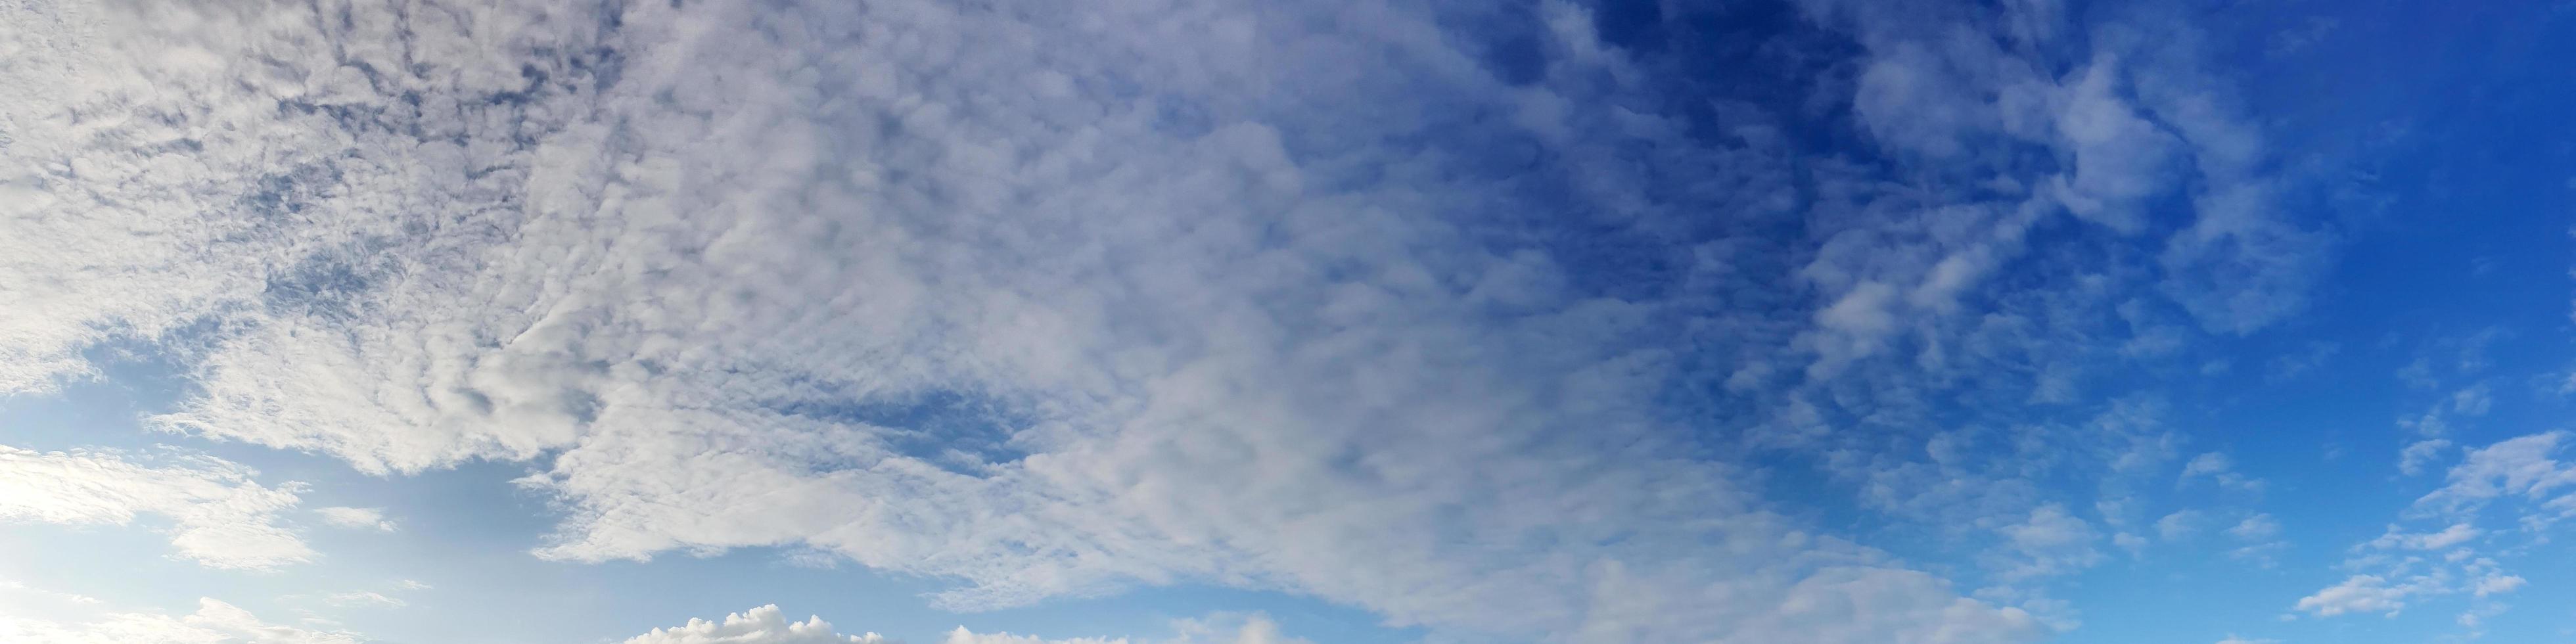 panorama cielo con nuvole in una giornata di sole foto